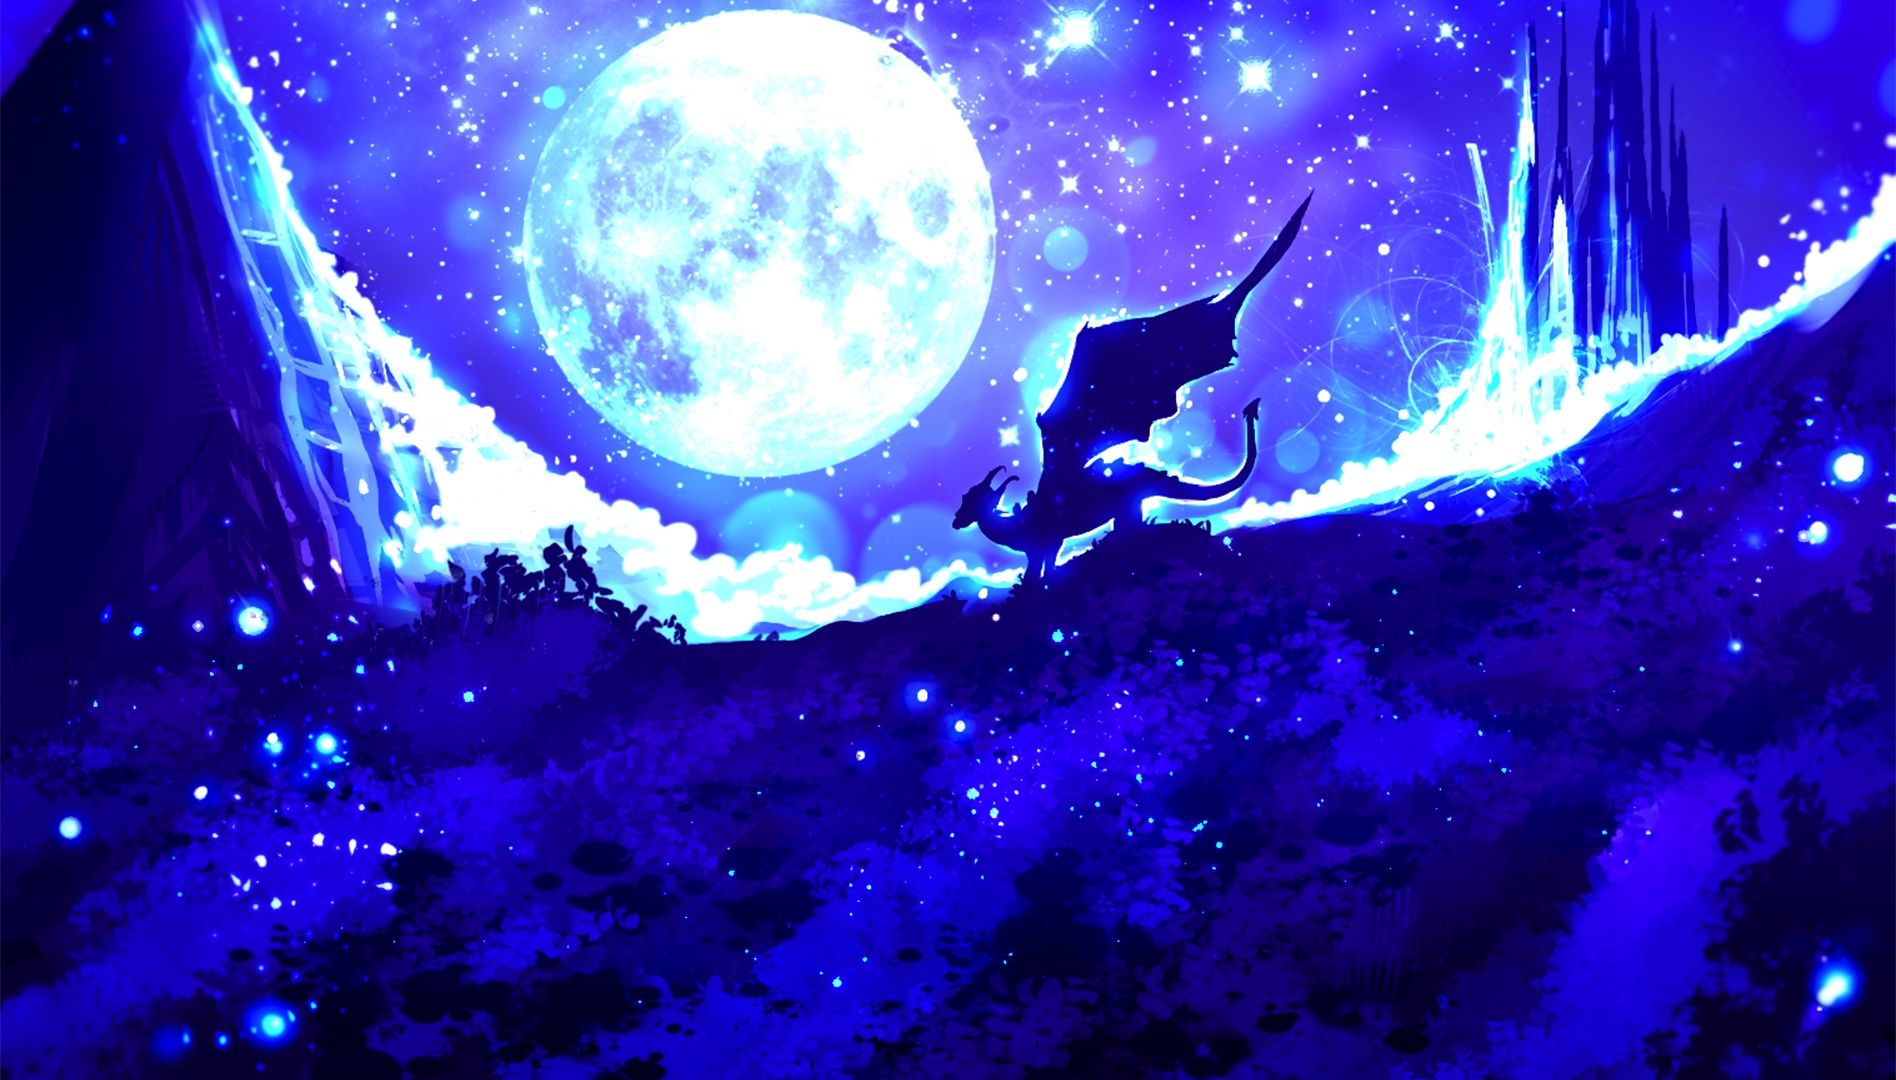 Wallpaper Dragon, night, moon, illustration, art